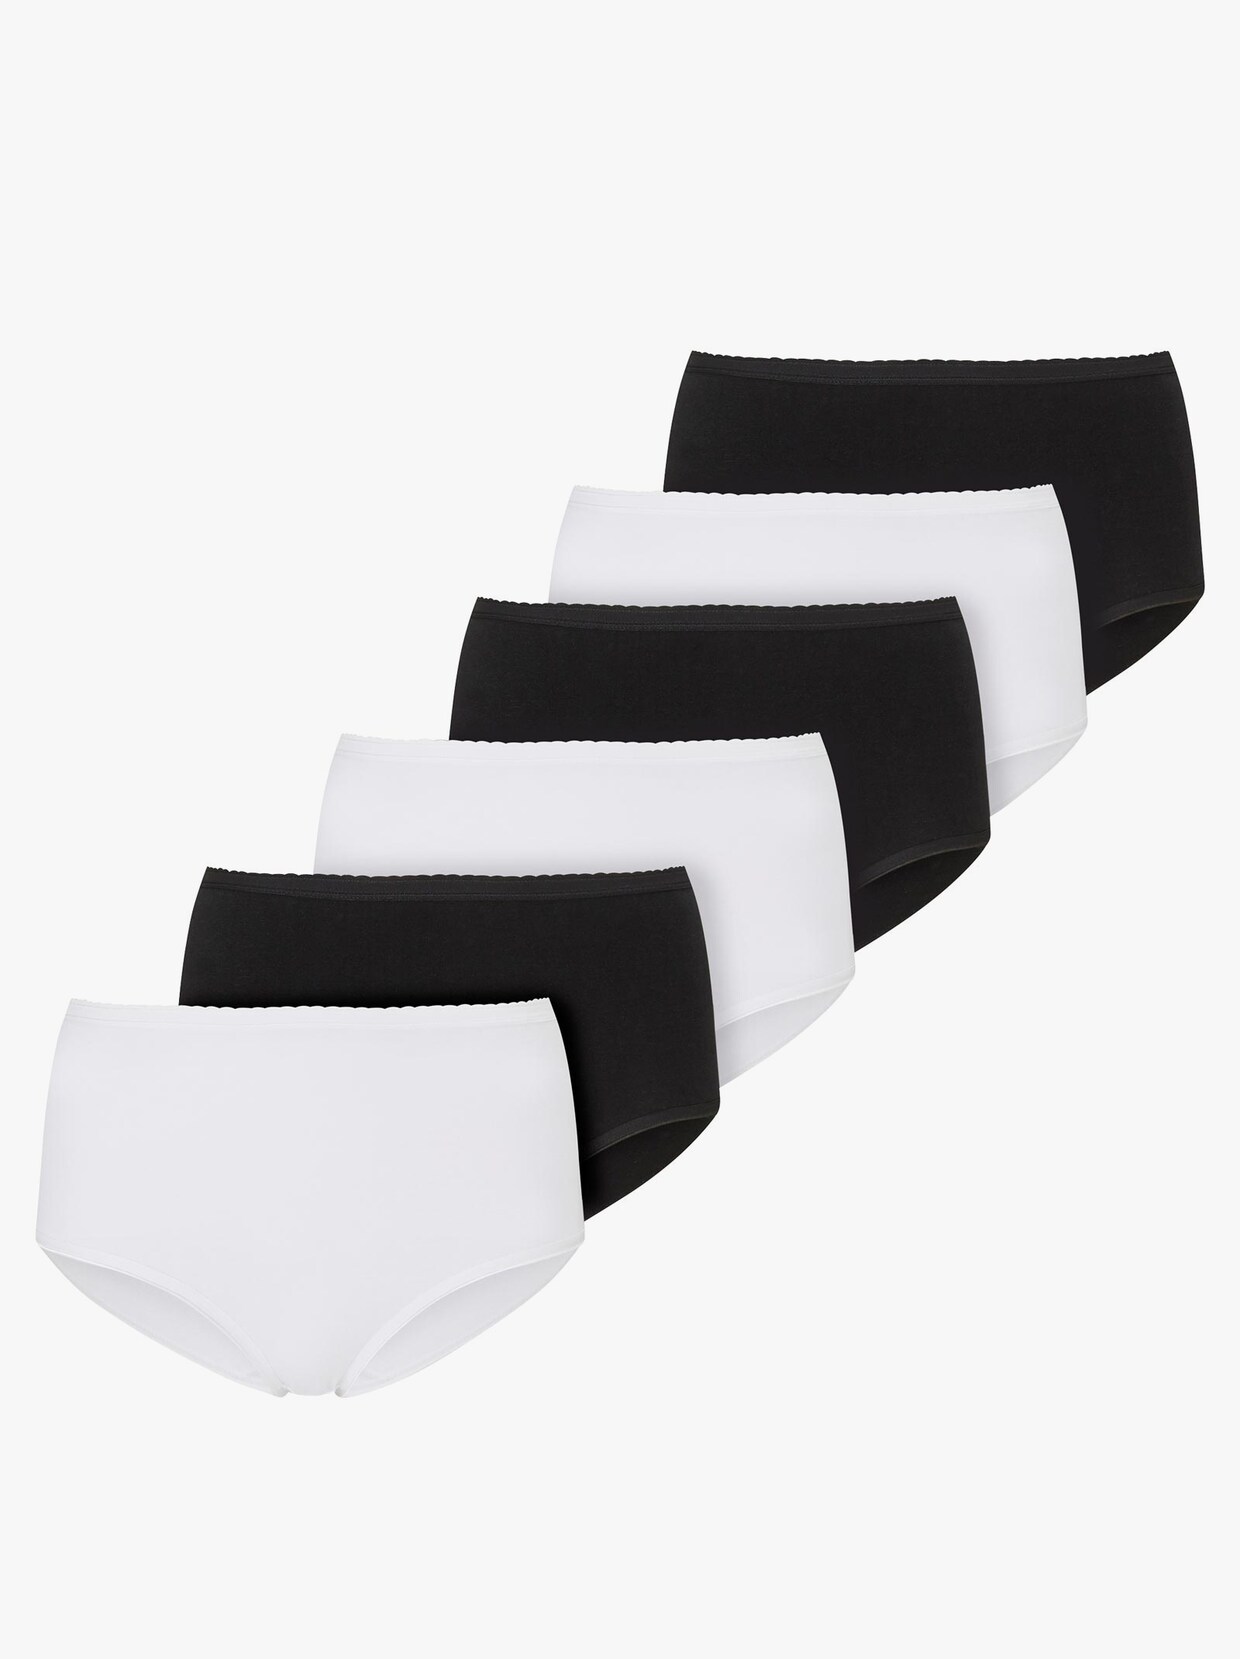 Kalhotky s pasem - 3x bílá + 3x černá